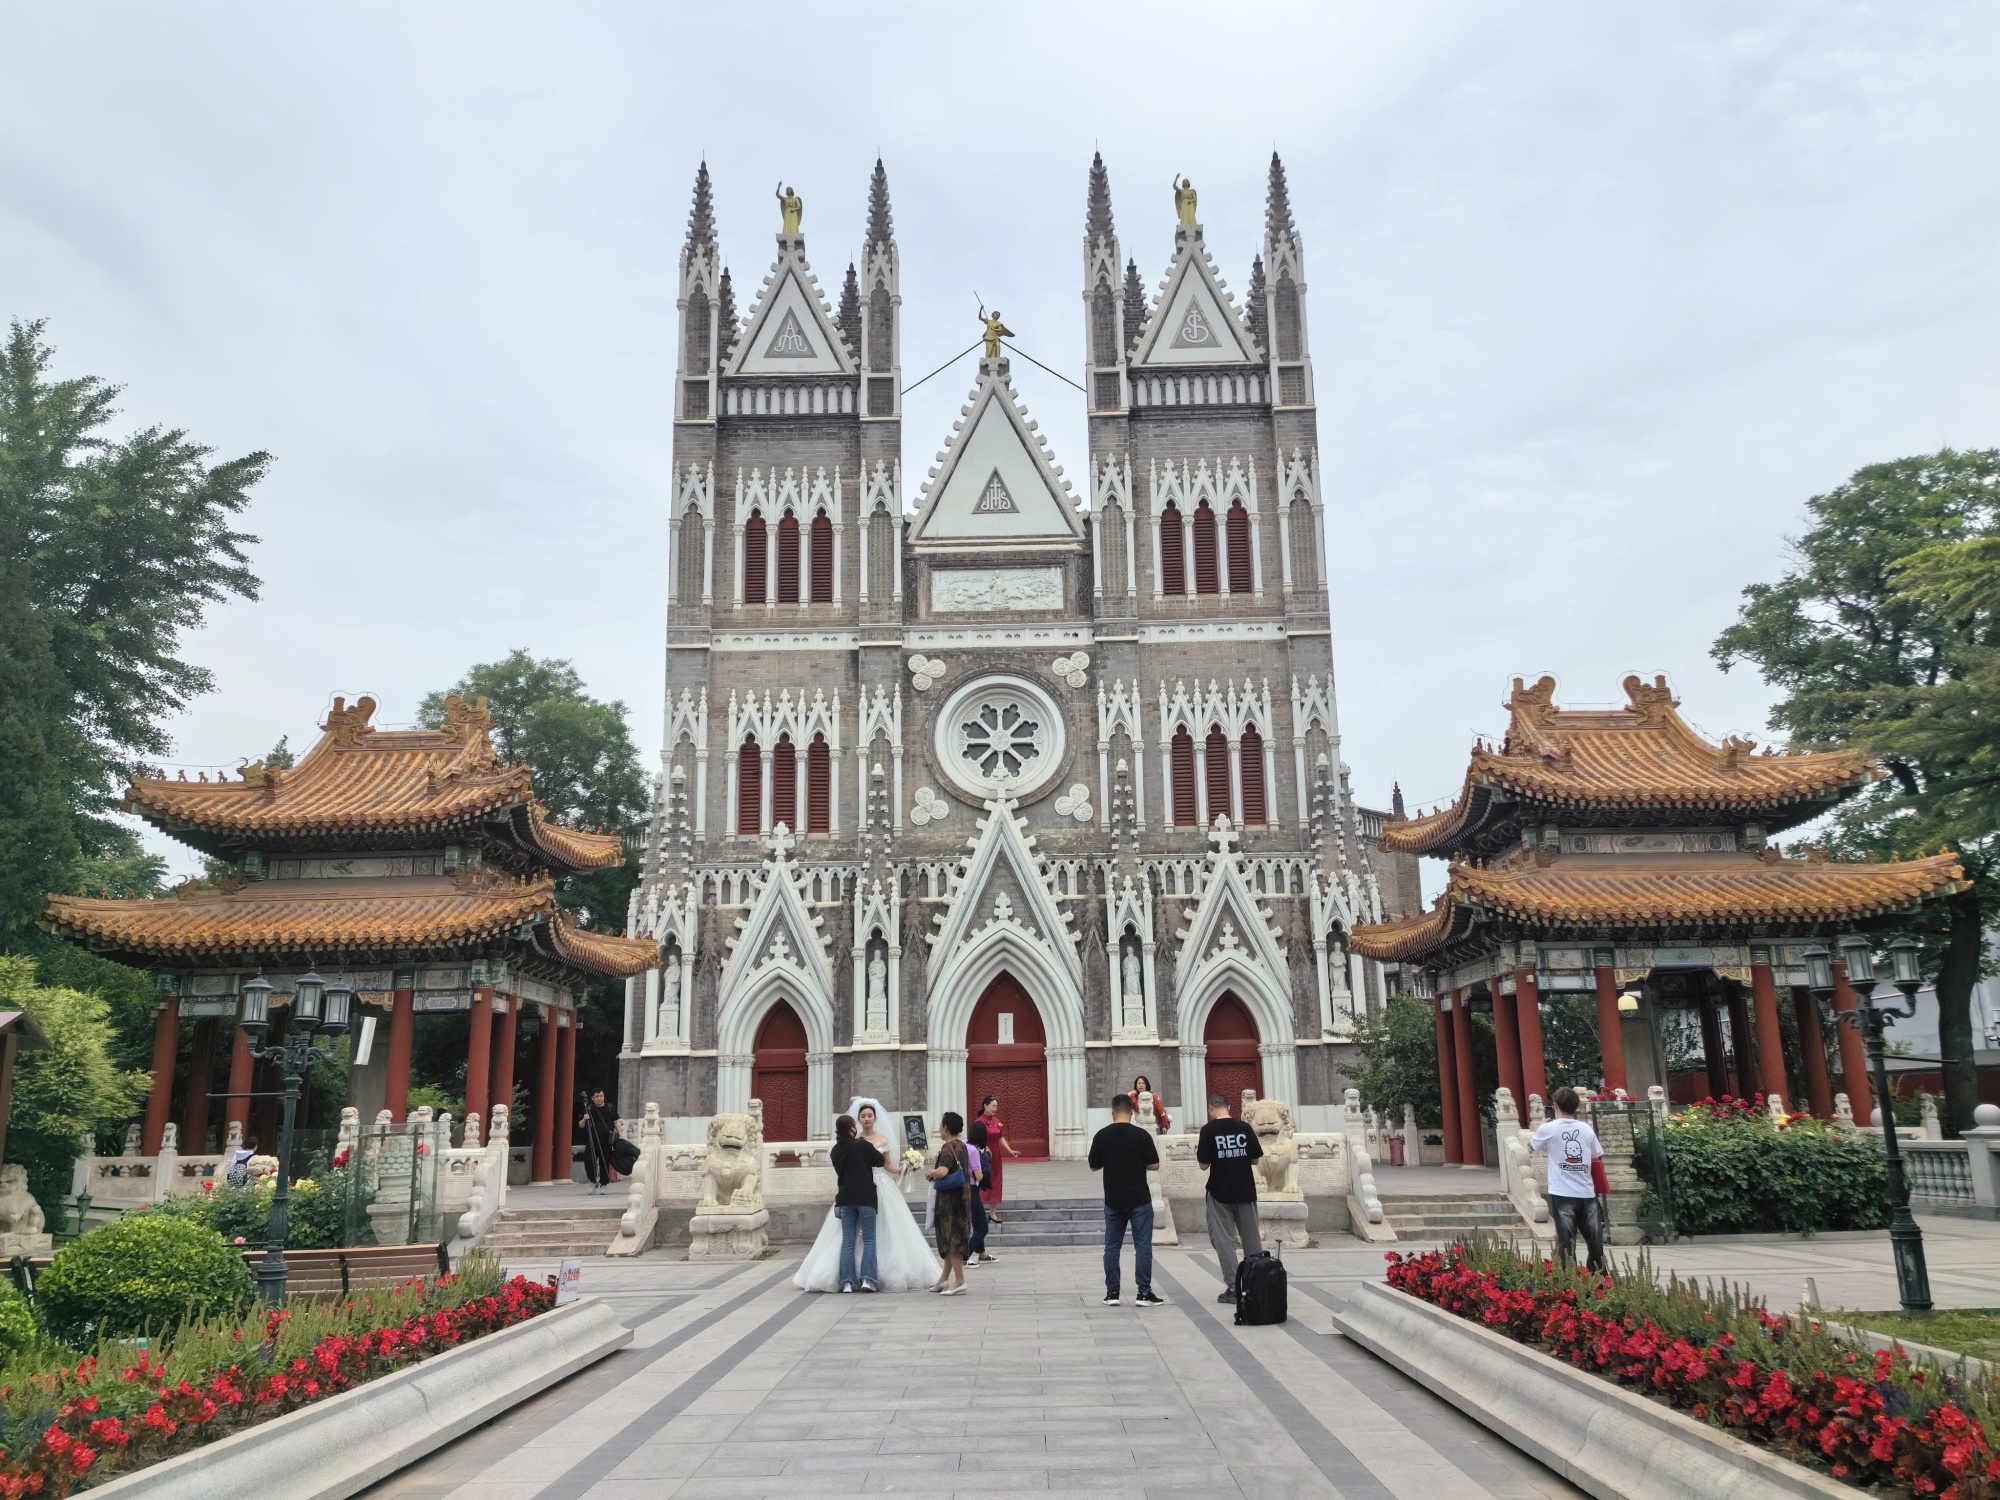 A view of Xishiku Catholic Church in Beijing. /CGTN